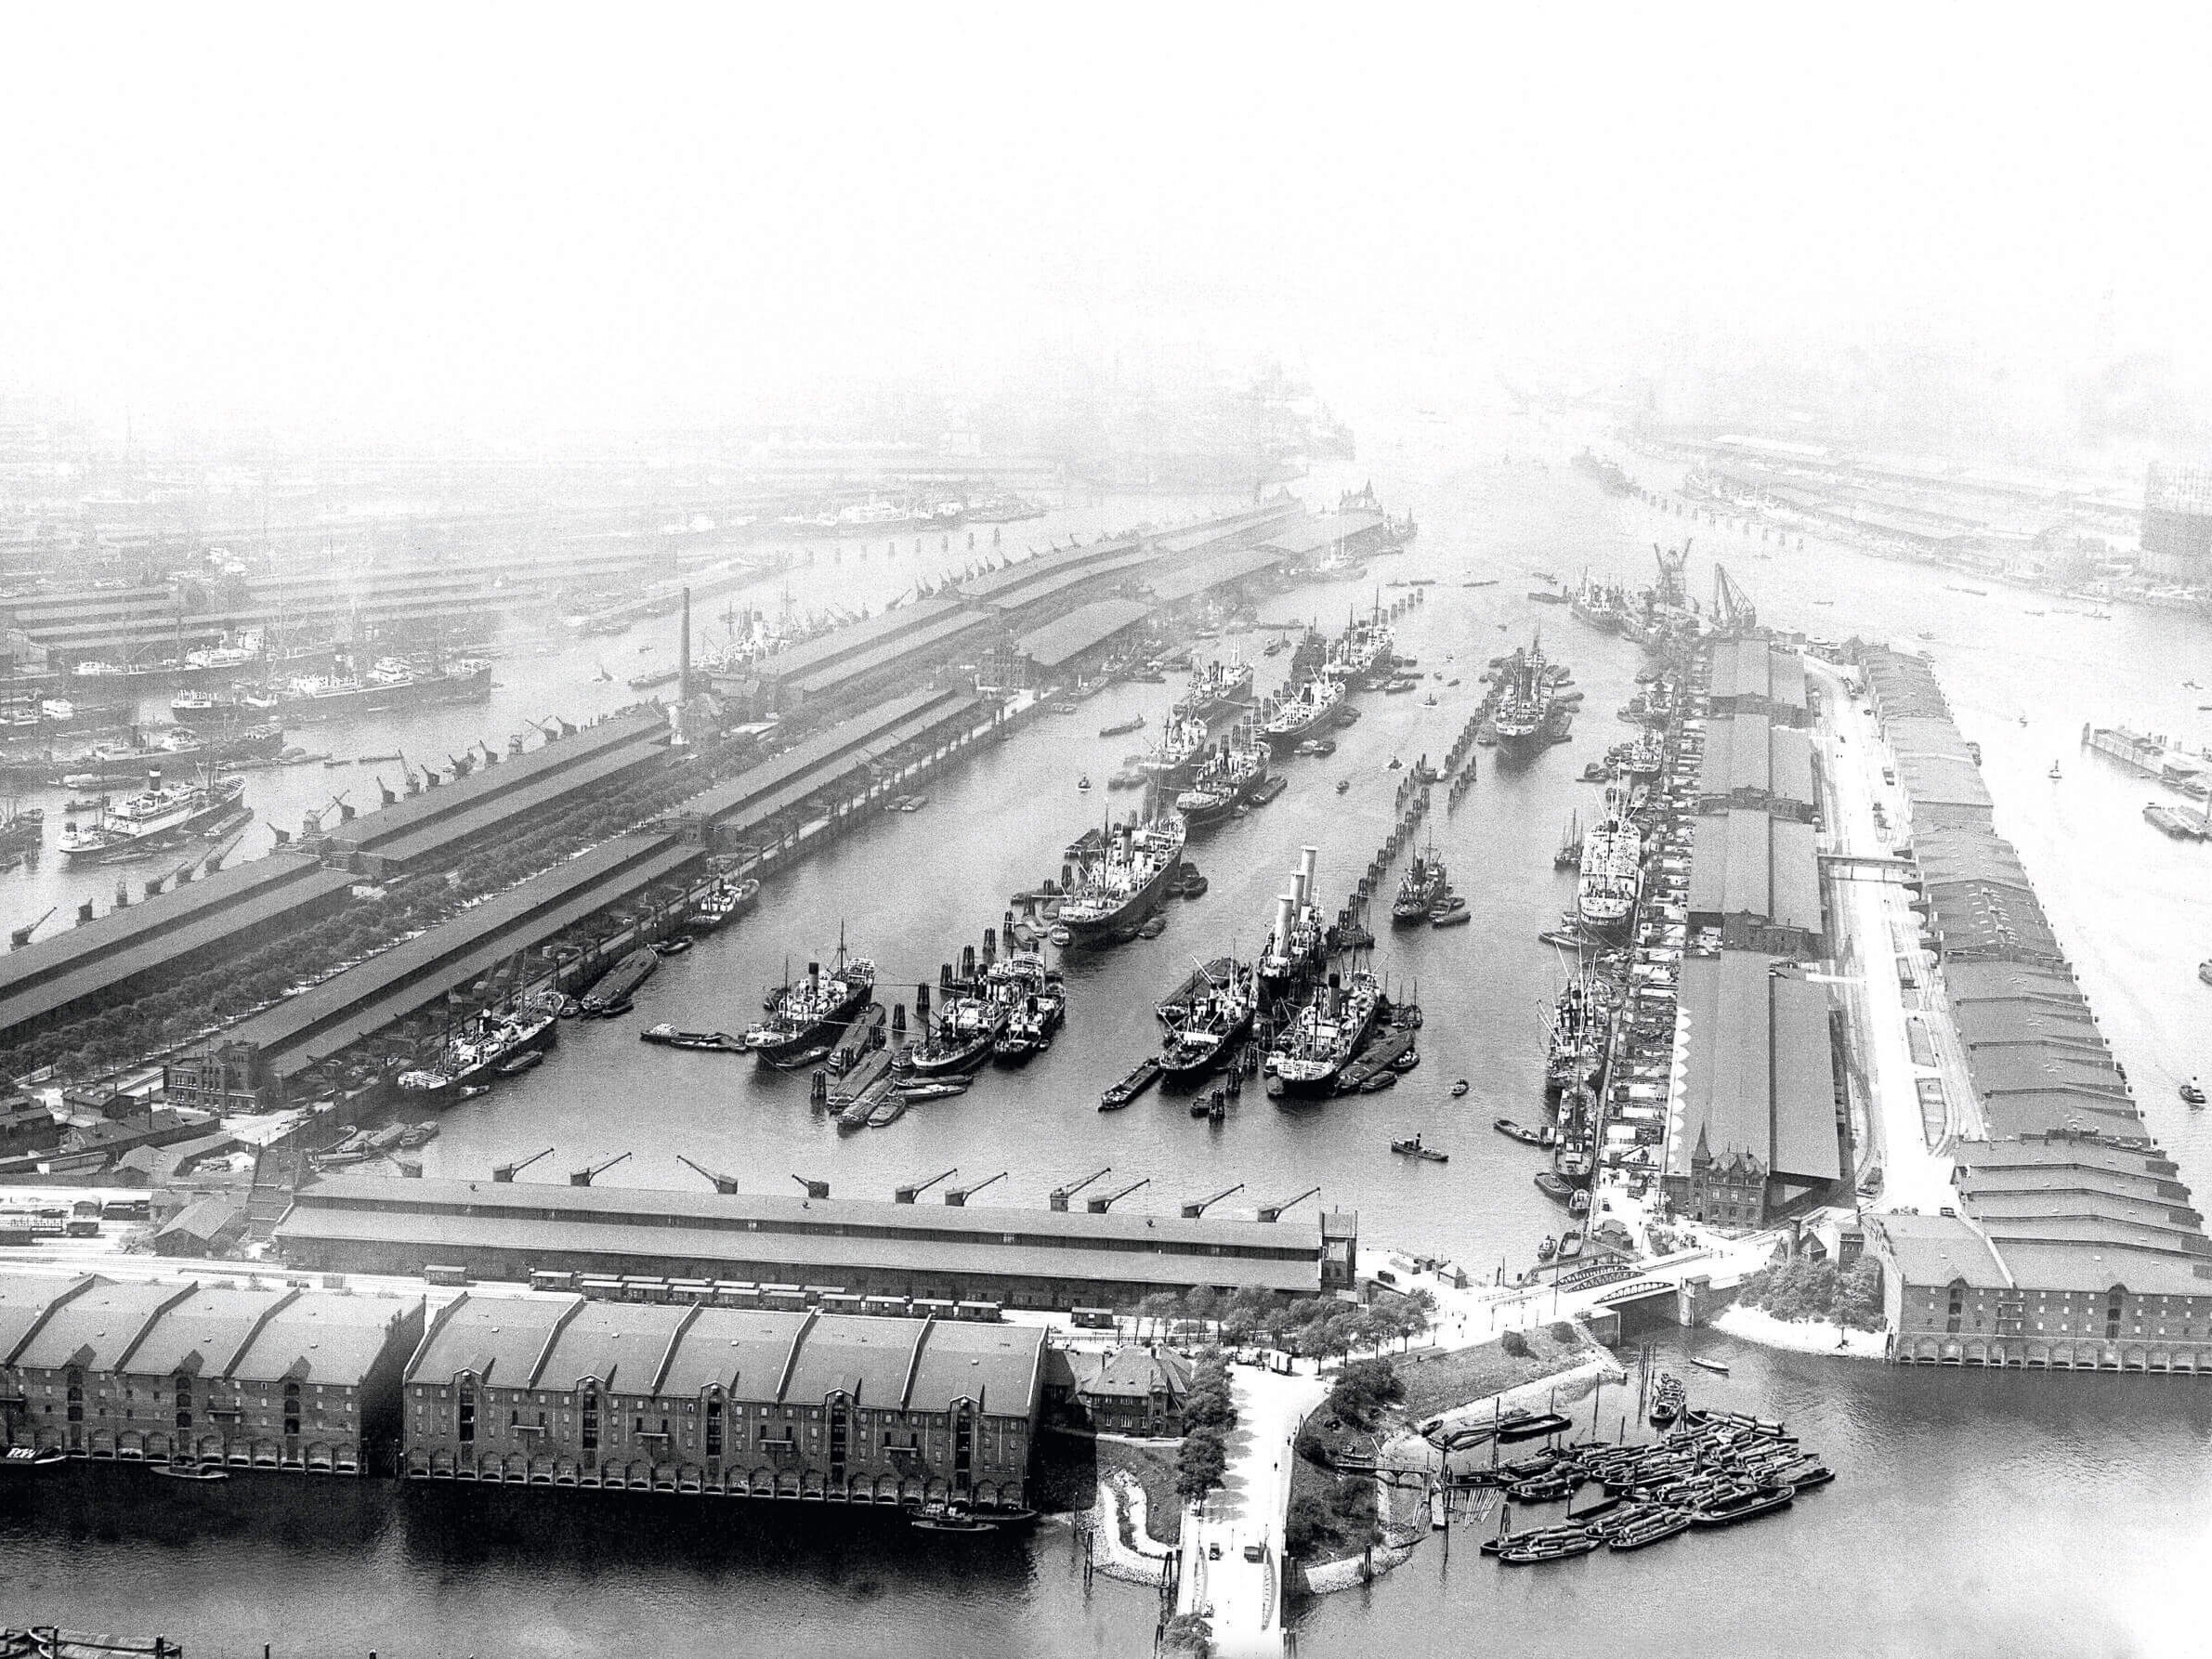 Historisches Luftbild des kleinen Grasbrooks mit Schiffen und Lagerhallen, schwarz-weiß